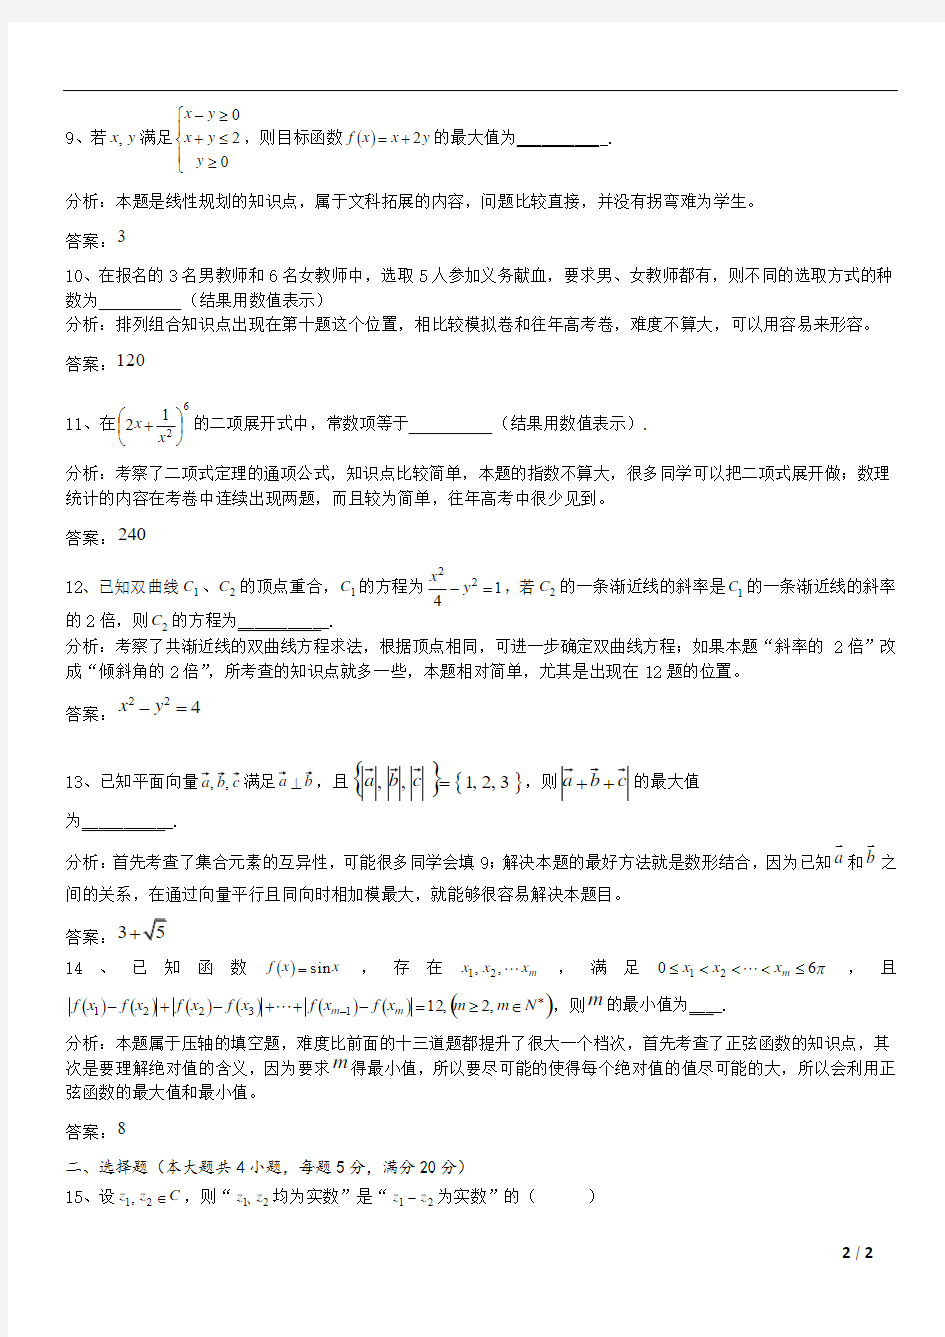 2015年上海高考数学(文科)试题答案详解